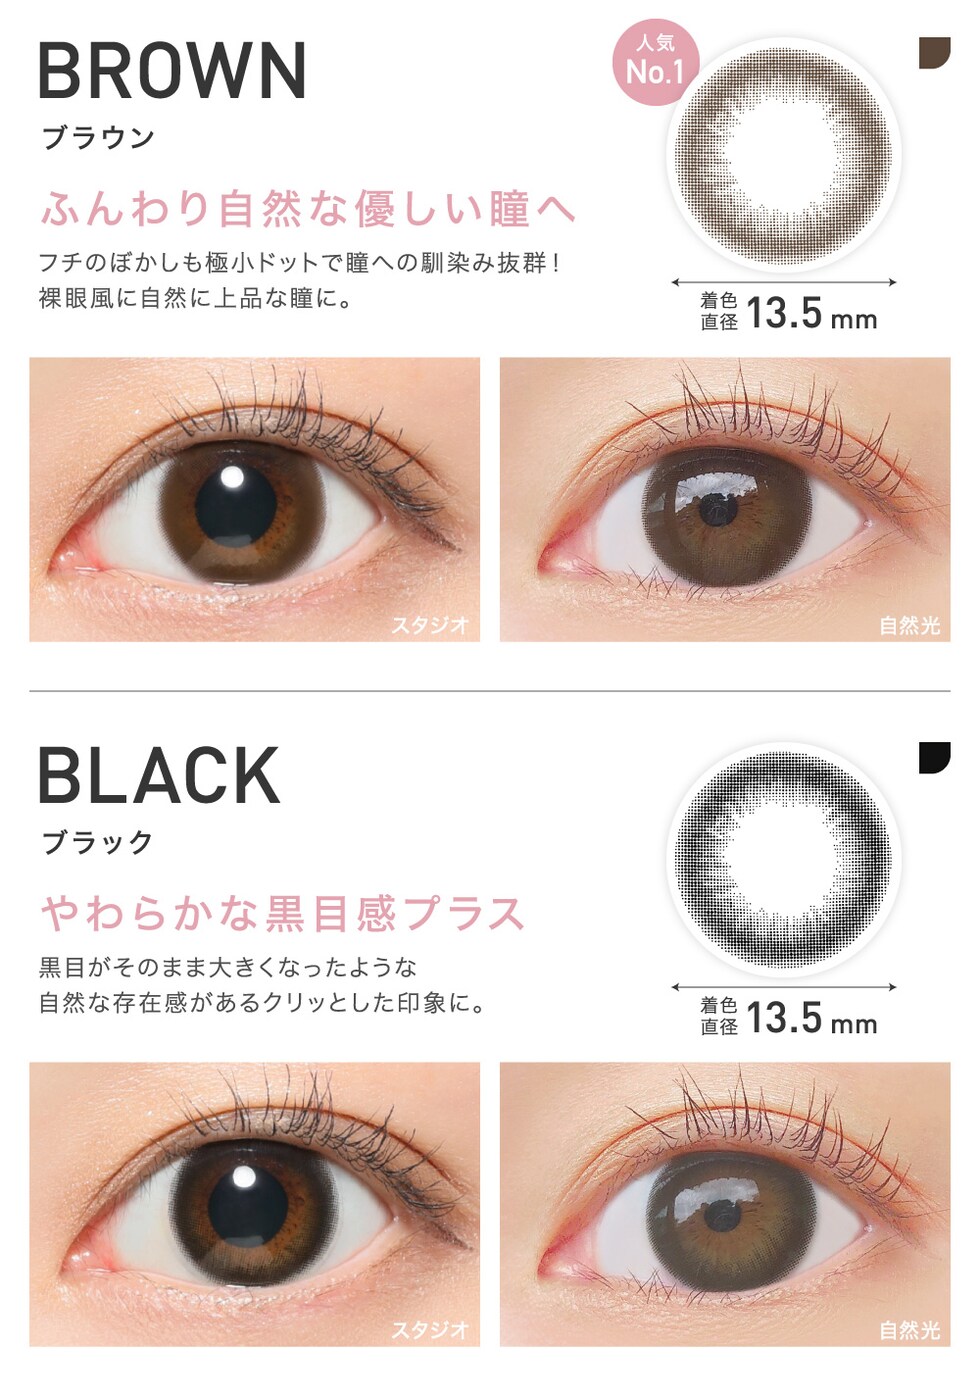 BROWN ブラウン ふんわり自然な優しい瞳へ/BLACK ブラック やわらかな黒目感プラス